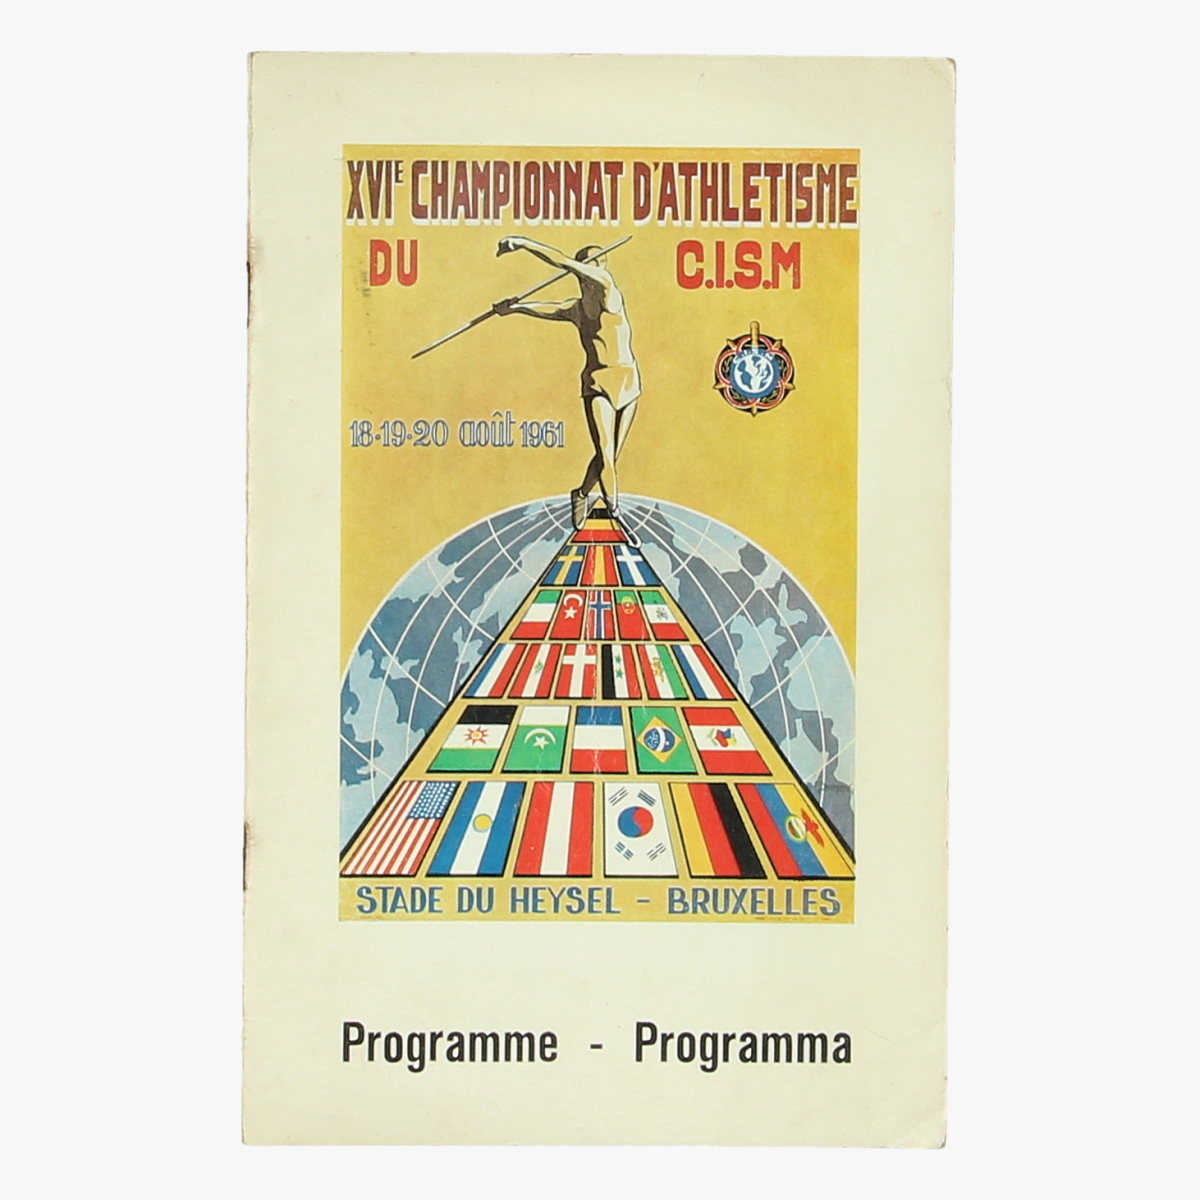 Afbeeldingen van championnat d'athletisme 1961 programma boekje en de uitslagen